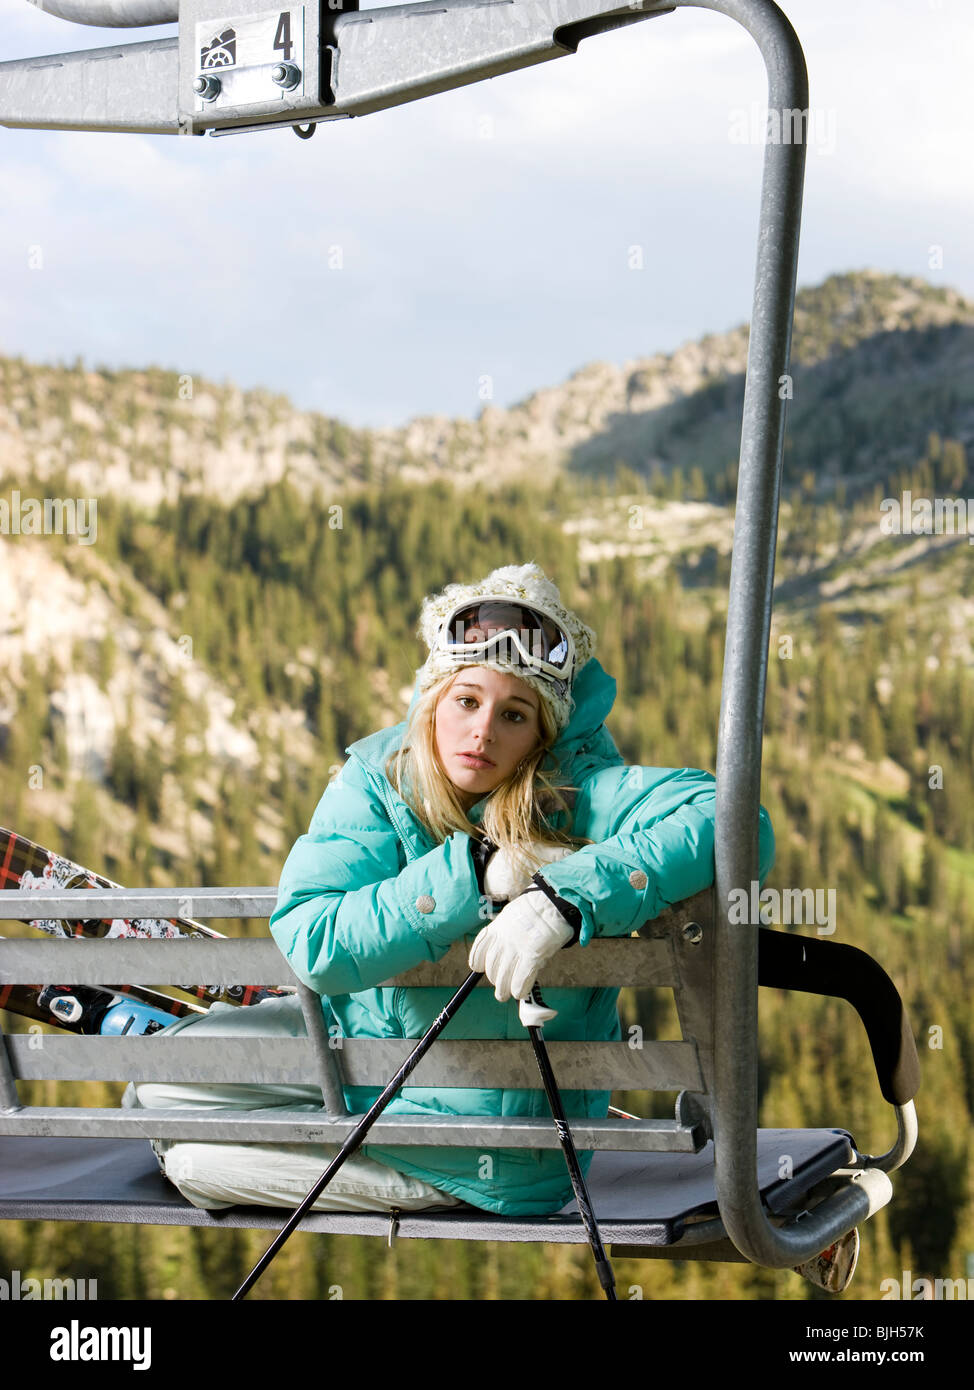 Le skieur d'un télésiège attendre qu'il neige Banque D'Images